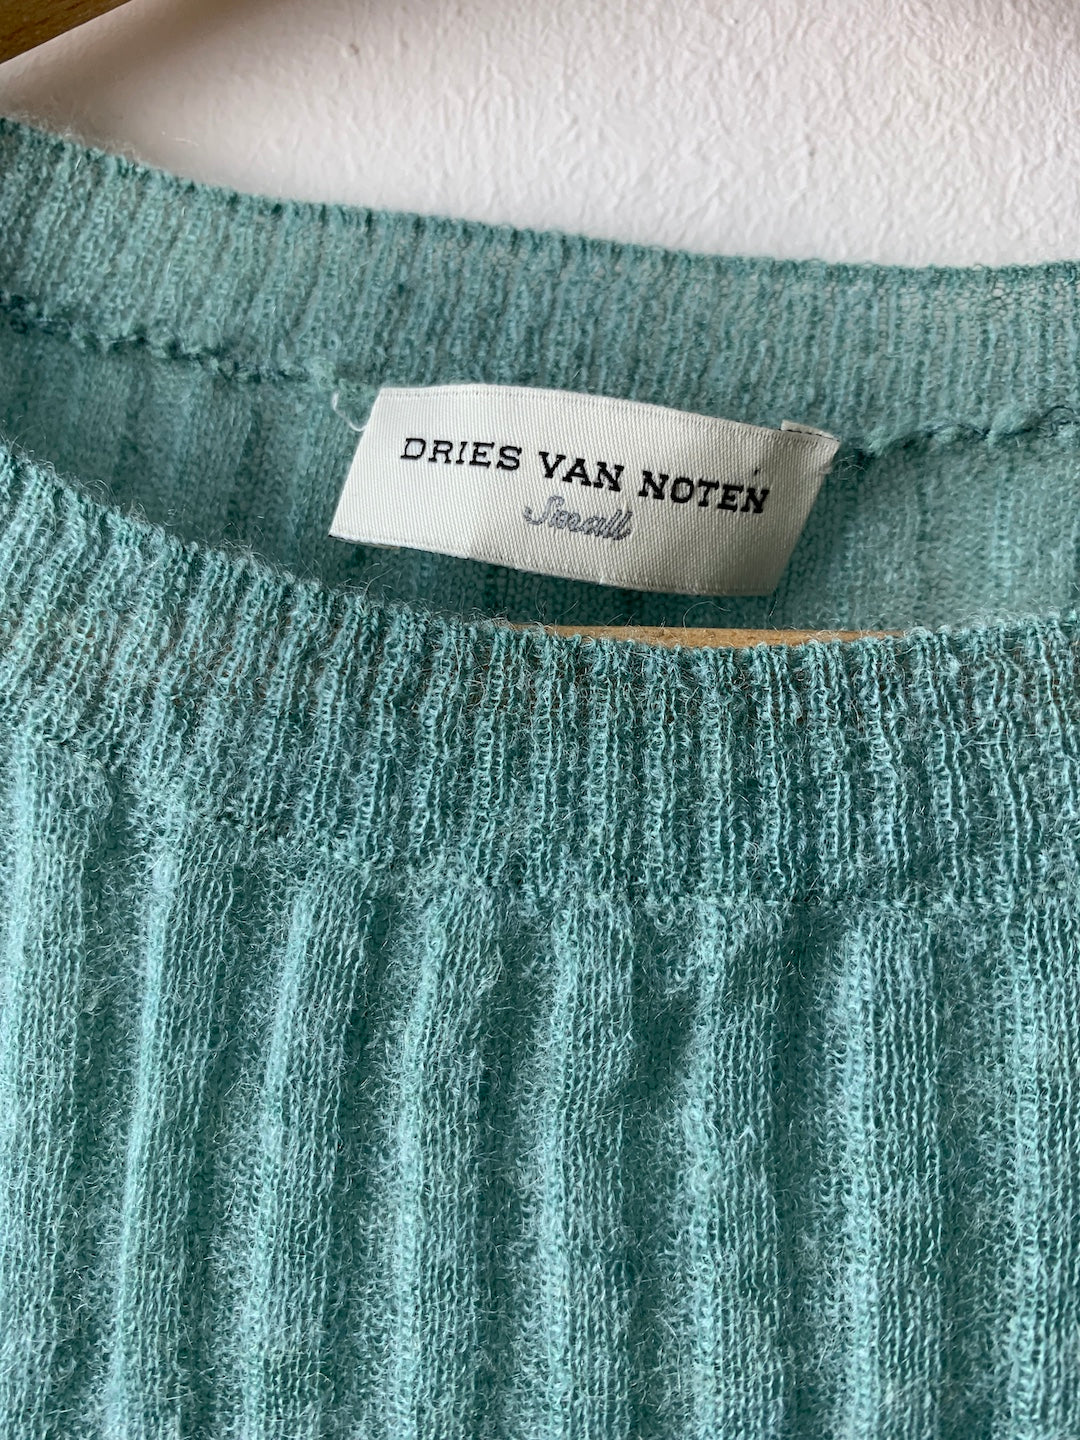 Dries Van Noten knitted tee